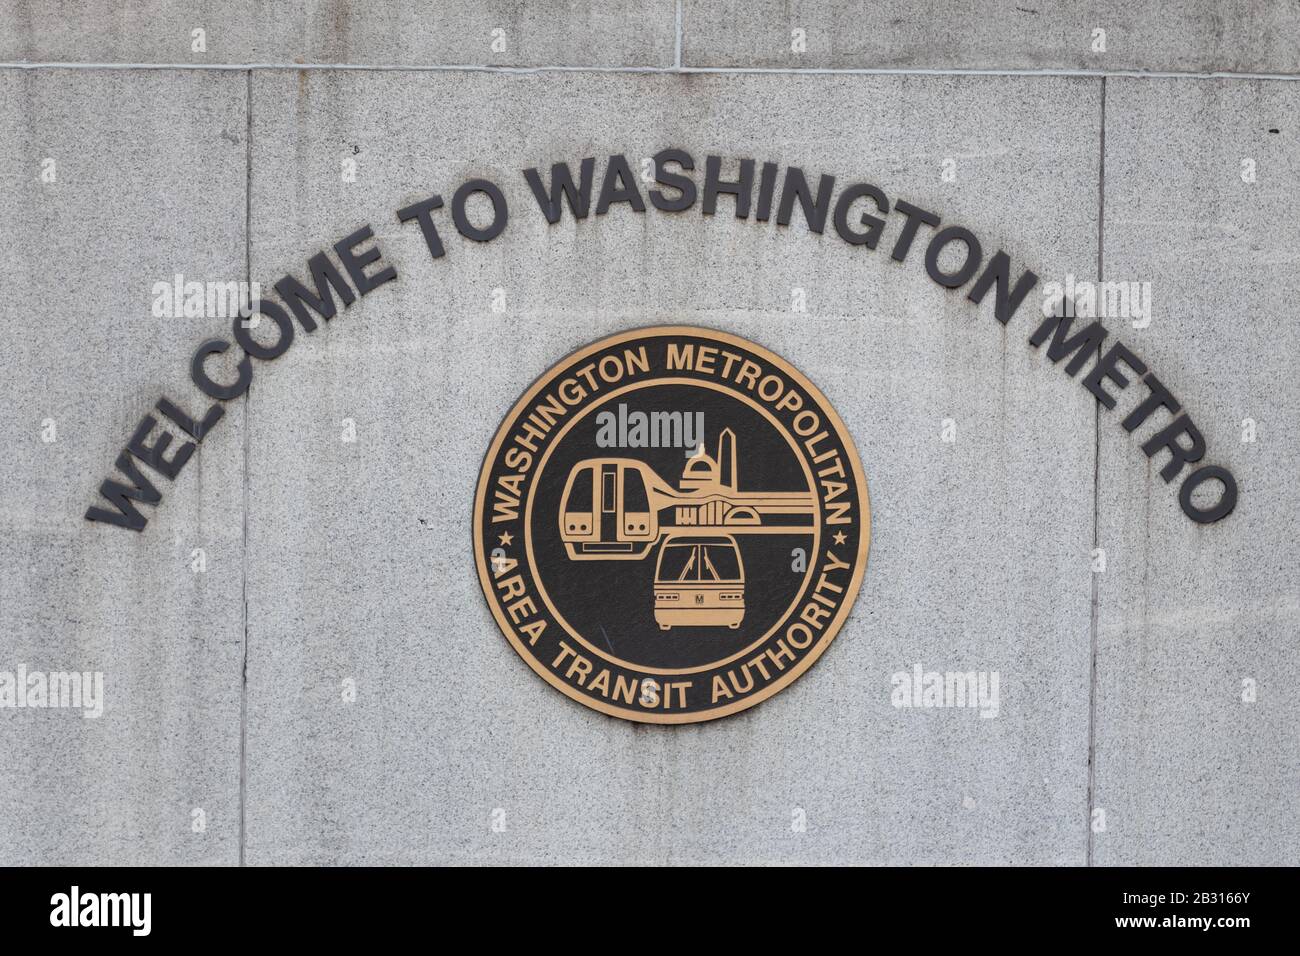 Logotipo de la Autoridad de tránsito del Área Metropolitana de Washington debajo de un cartel de bienvenida a una entrada a la estación de metro de Washington. Foto de stock